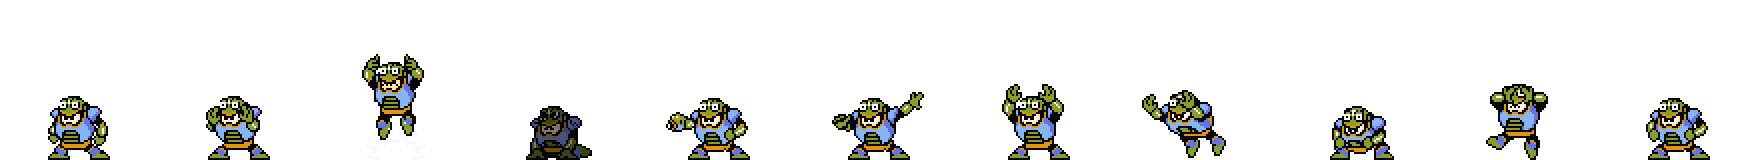 Toad Man (Concept Alt) | Base Sprite Left